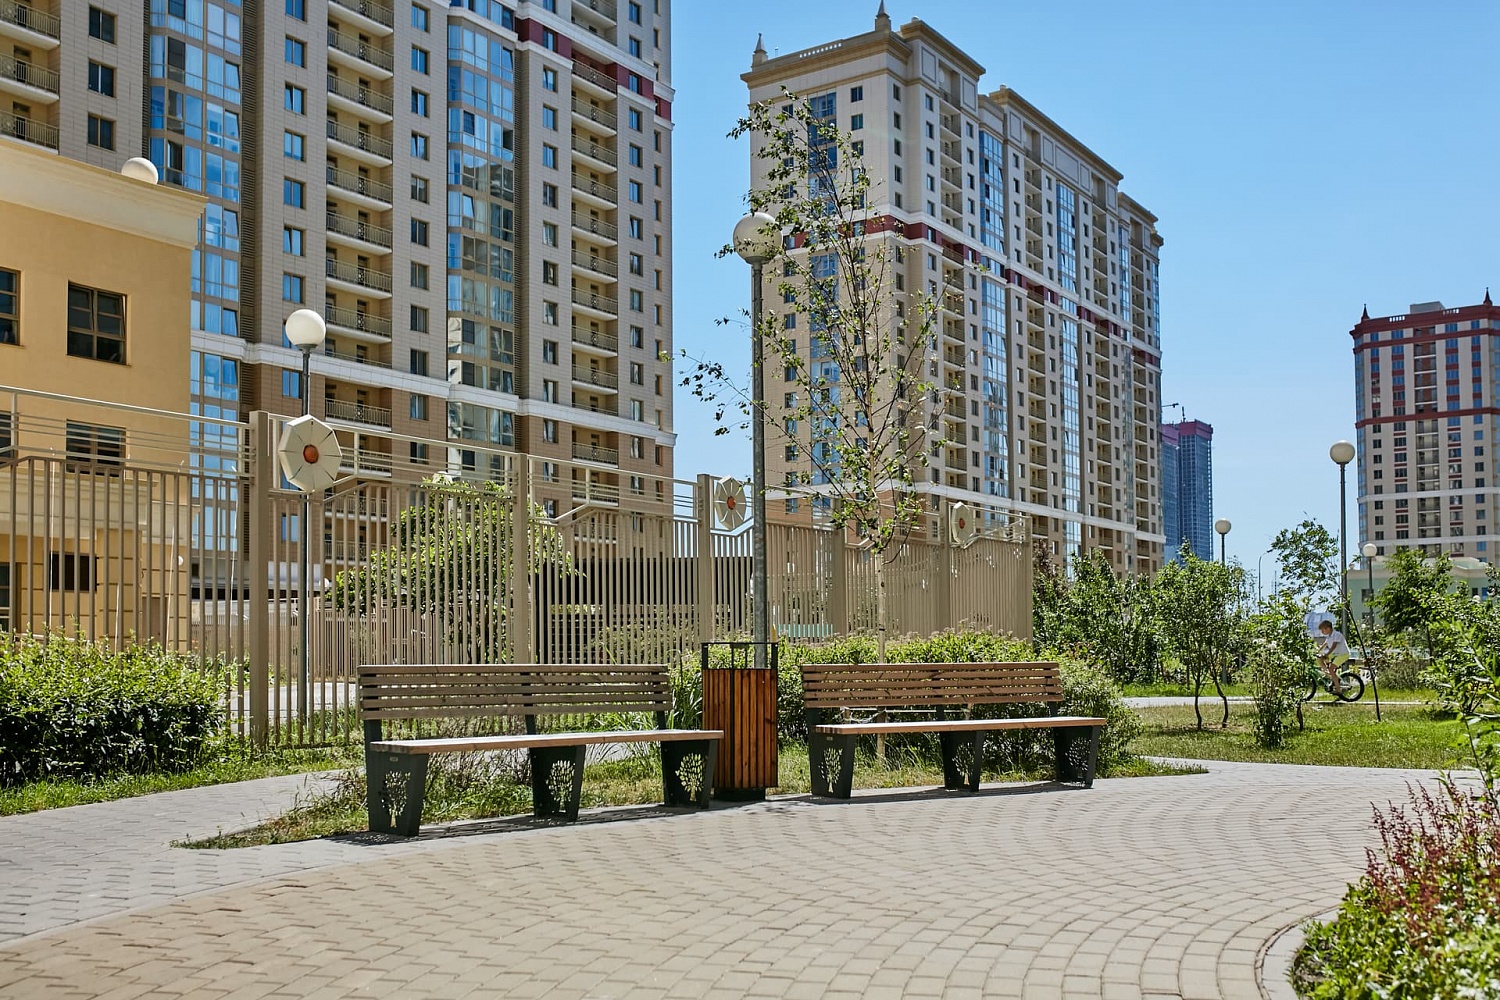 ЖК Грюнвальд, Москва (2019 год)